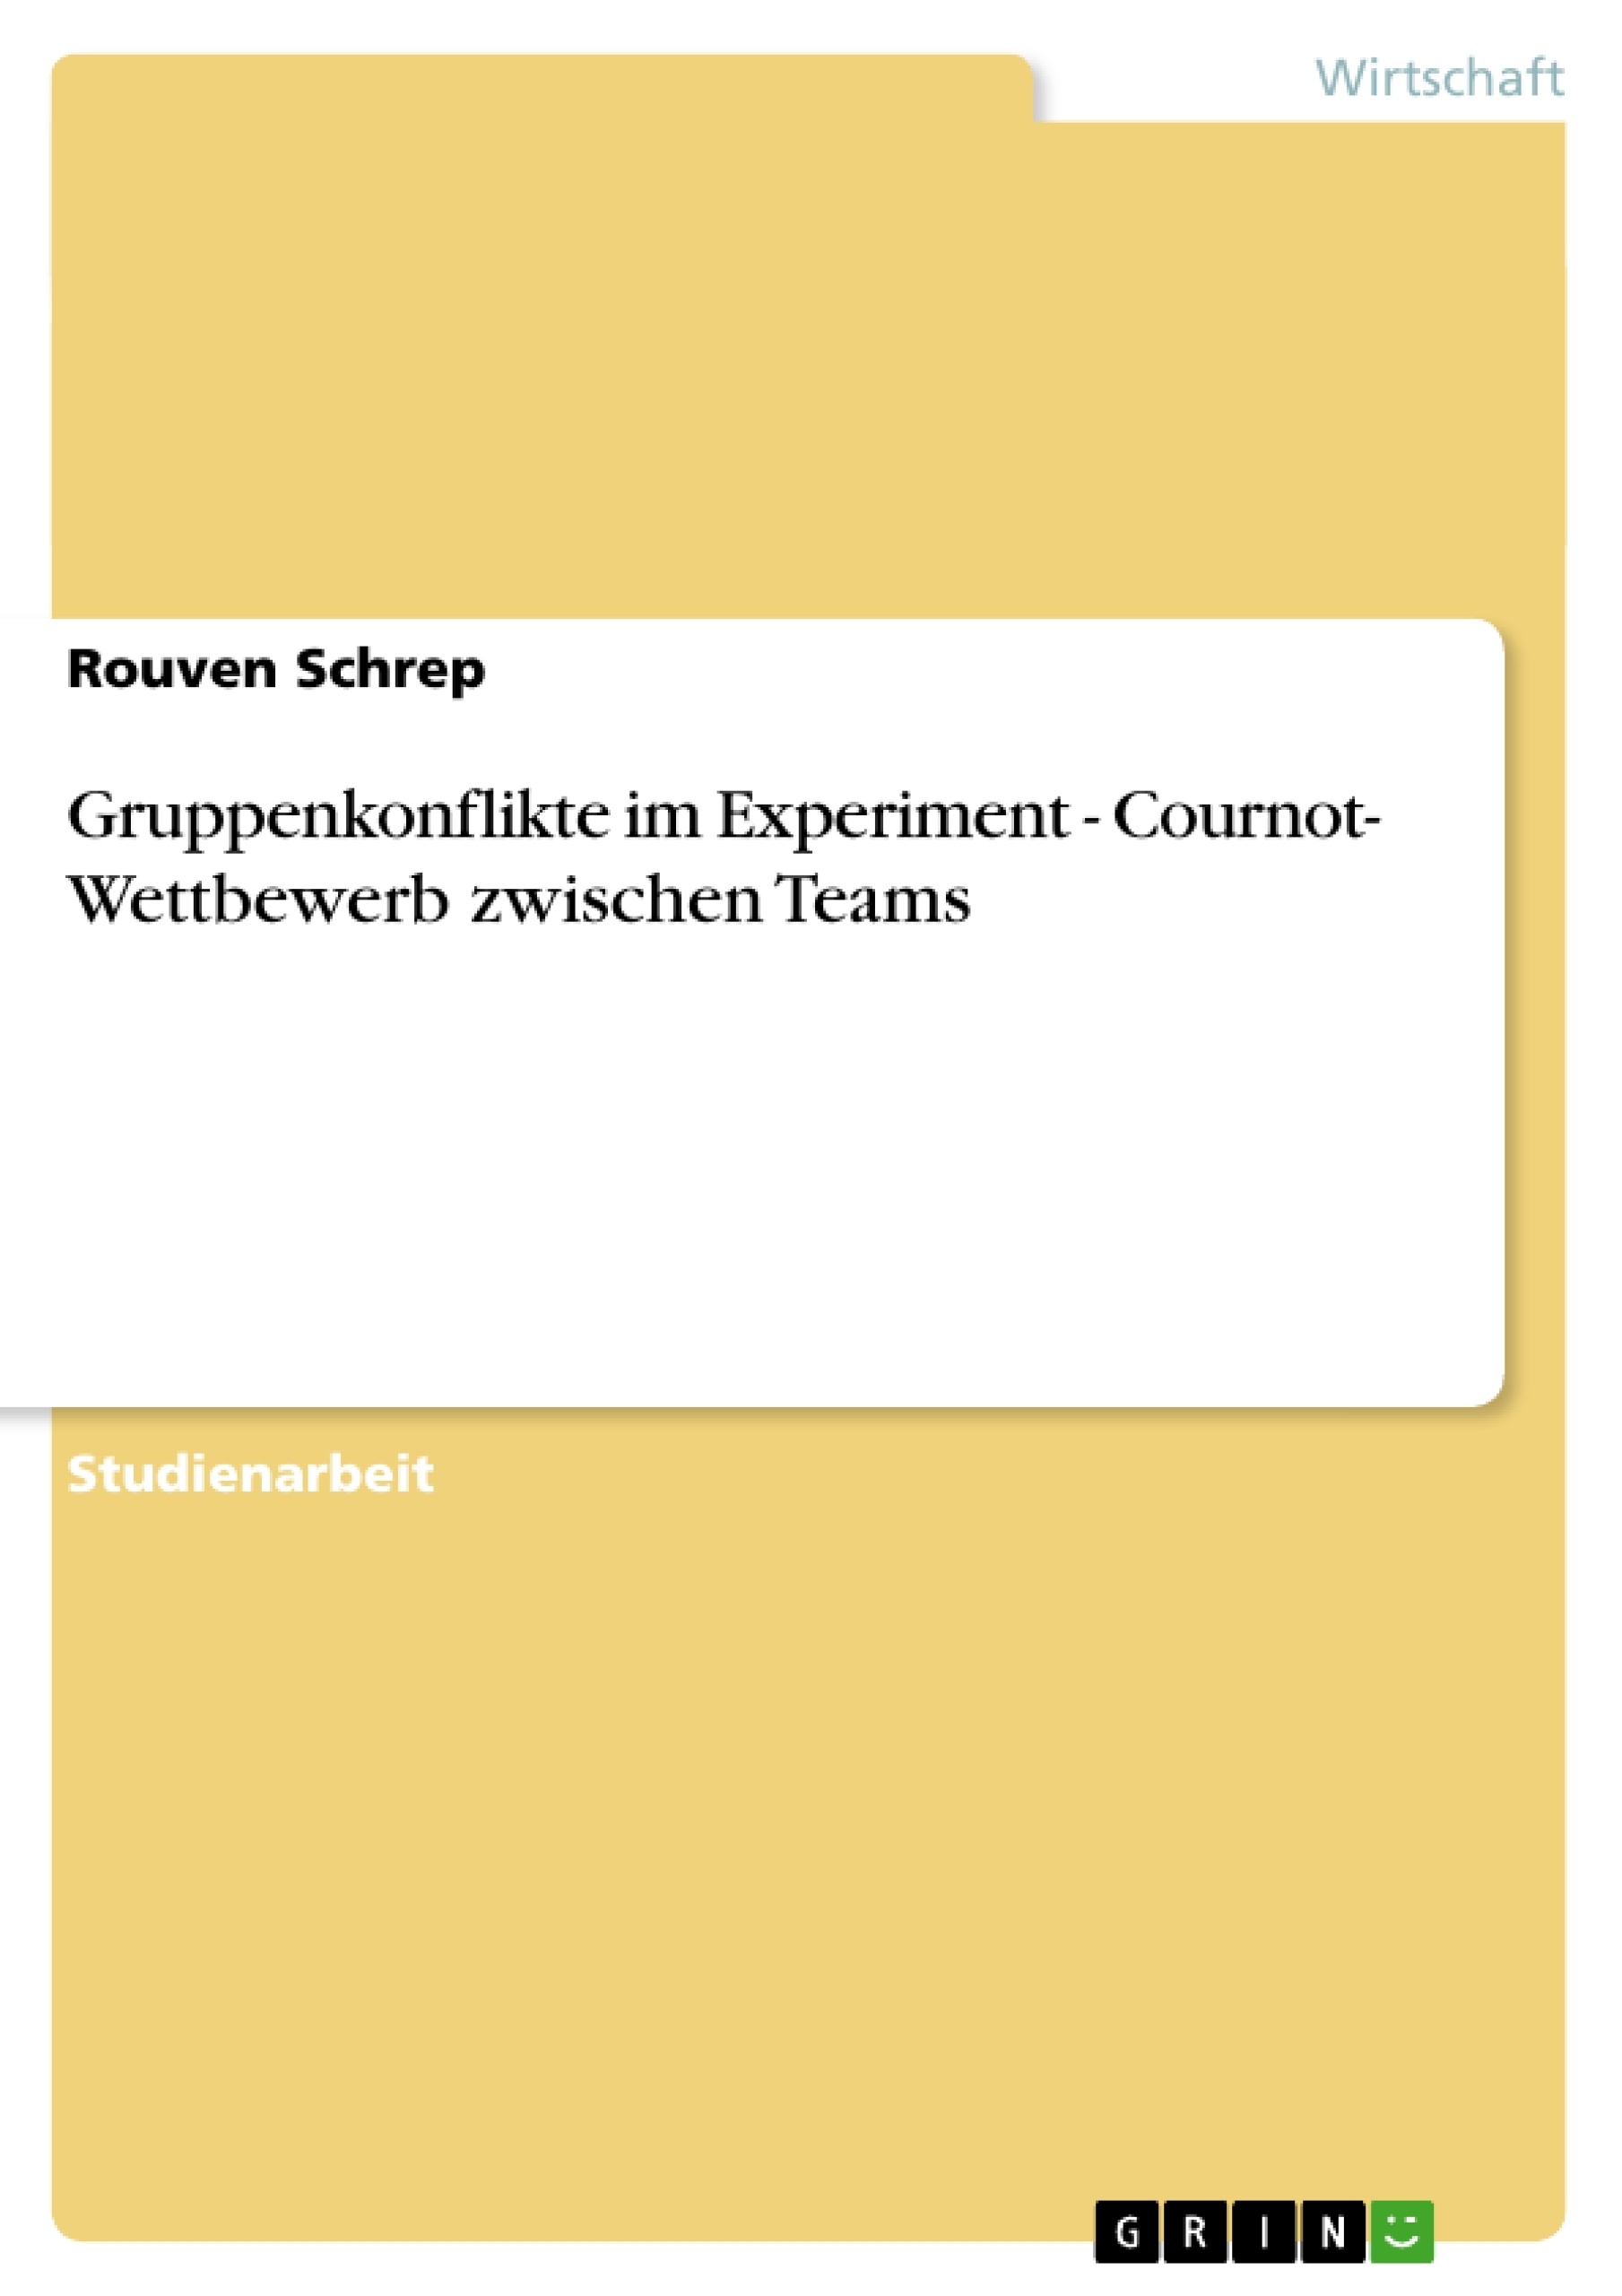 Title: Gruppenkonflikte im Experiment - Cournot- Wettbewerb zwischen Teams